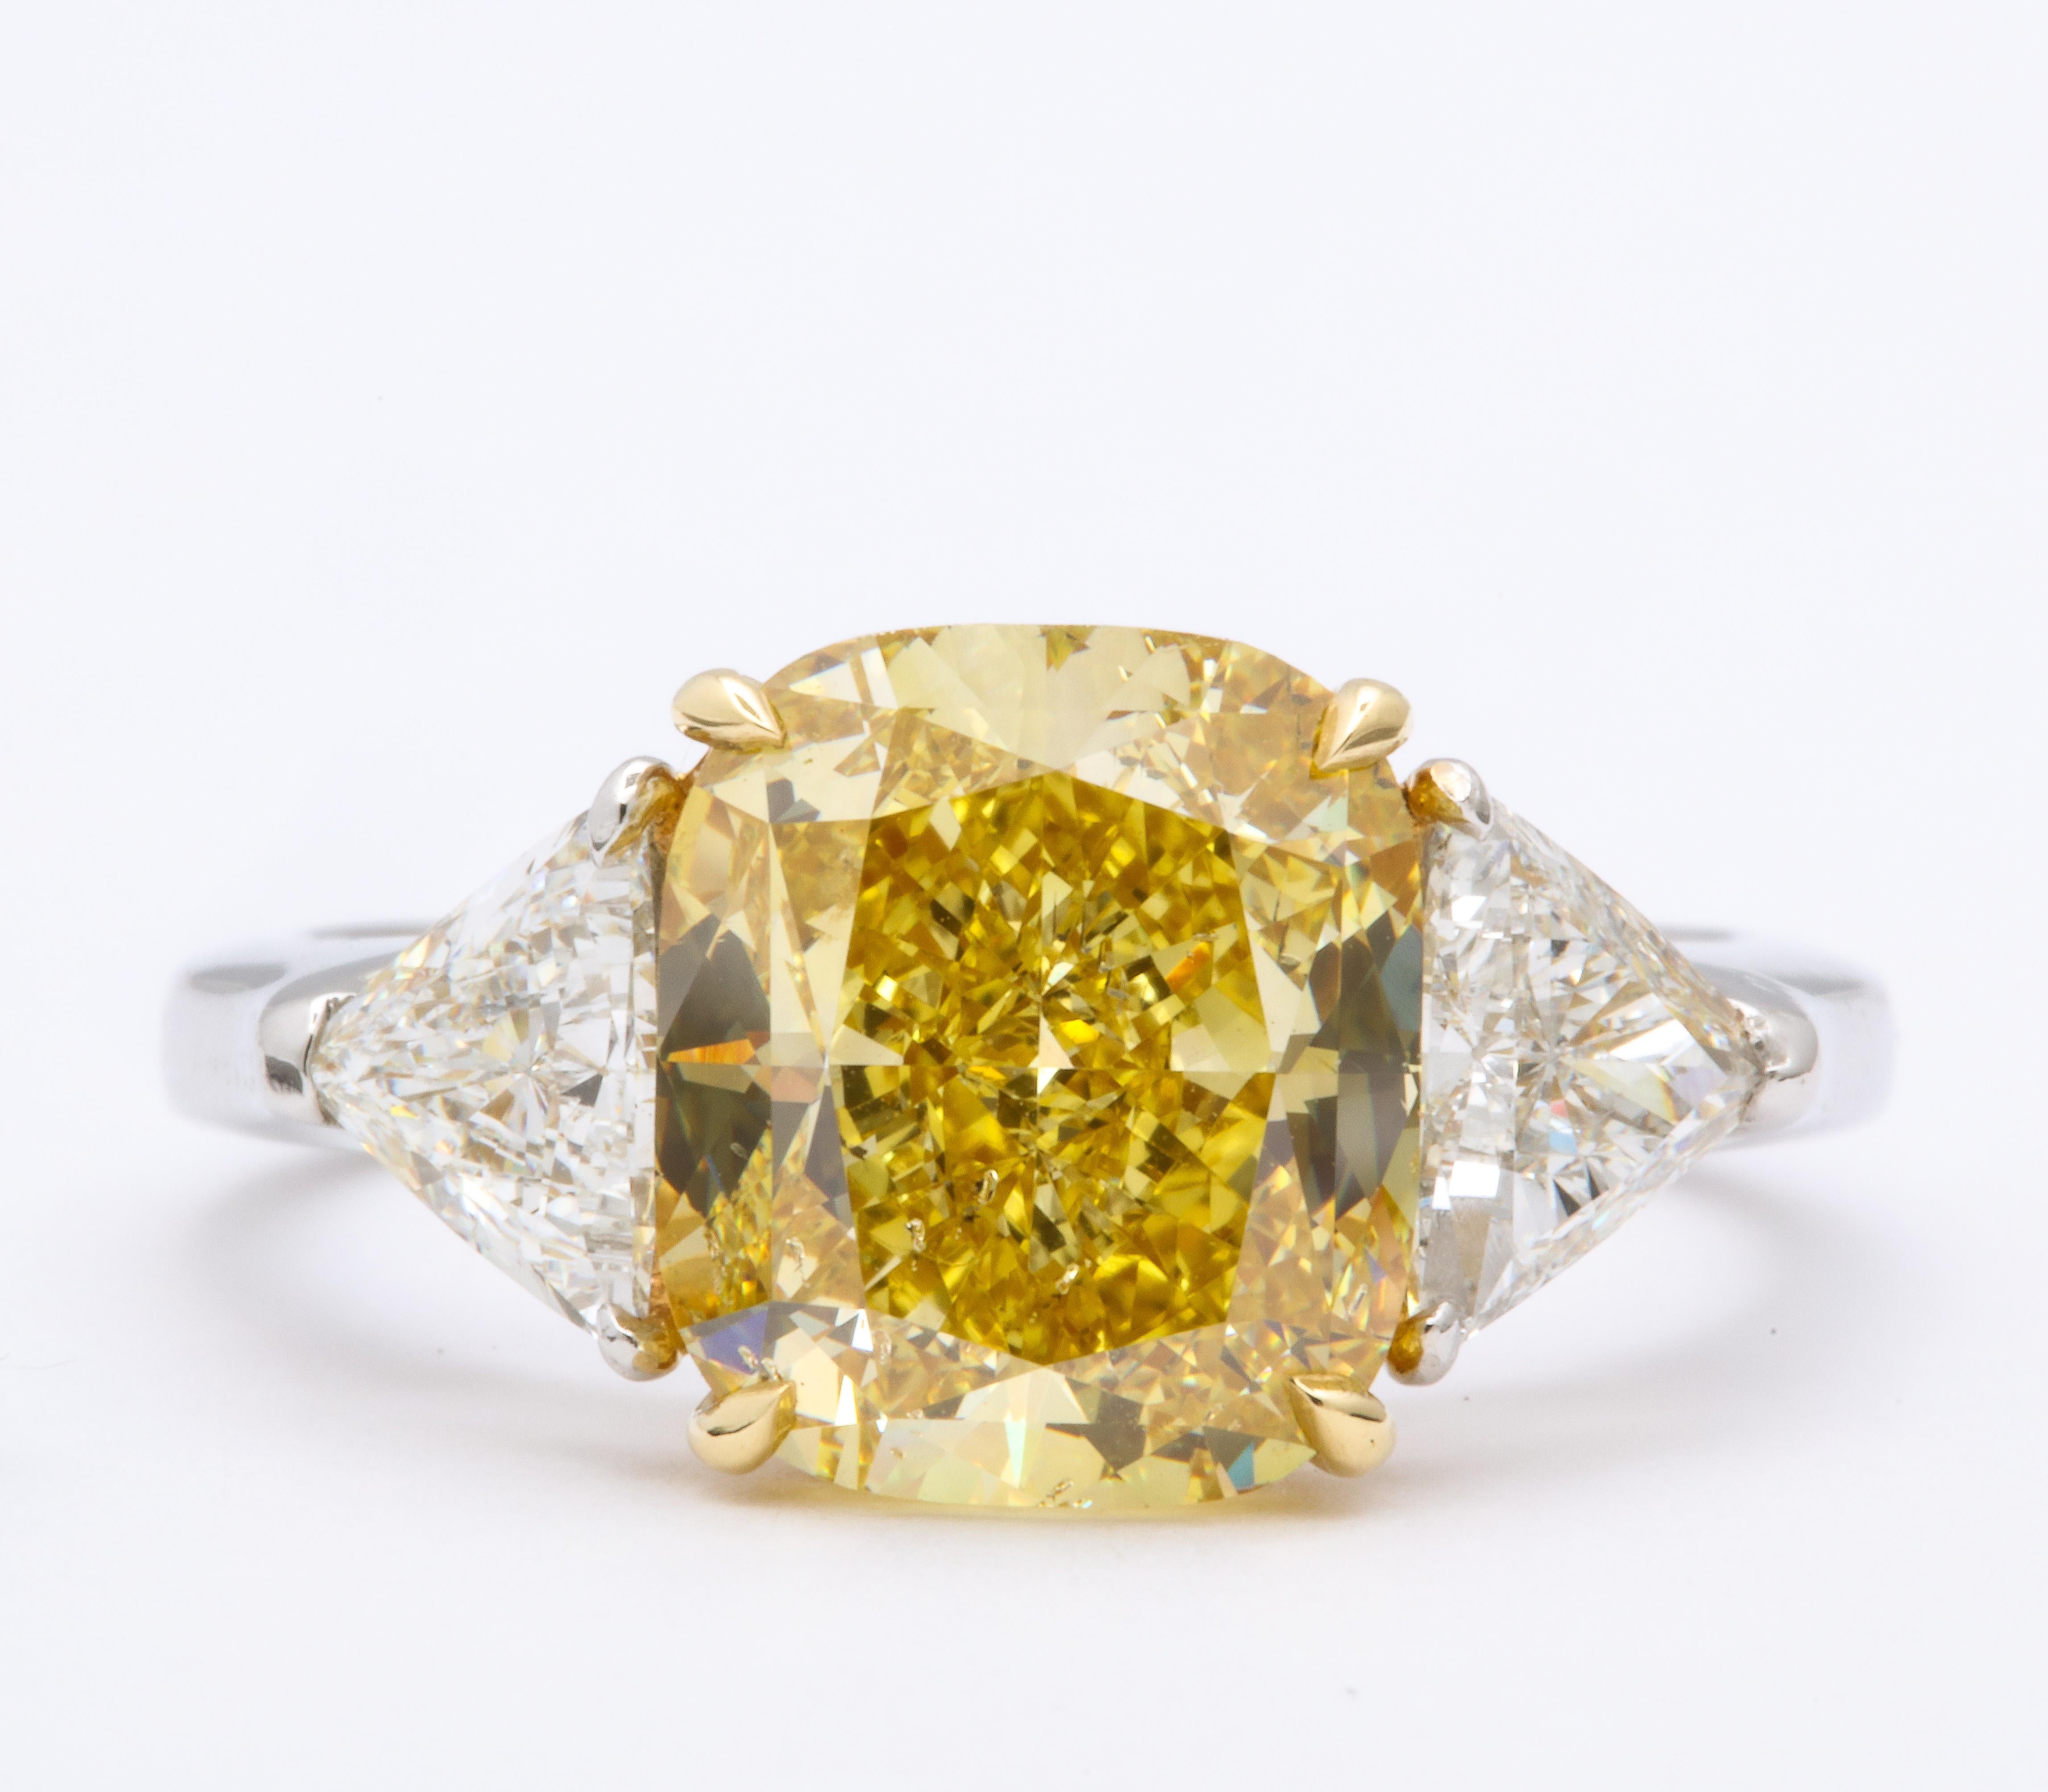 
Atemberaubender Diamant im Kissenschliff mit 4,30 Karat, GIA-zertifiziert Fancy Intense Yellow, SI2. 

Mit 1,10 Karat weißen Diamanten im Billionen-Schliff besetzt. 

Platin und 18k gelb

Derzeit eine Größe 6, kann dieser Ring leicht Größe